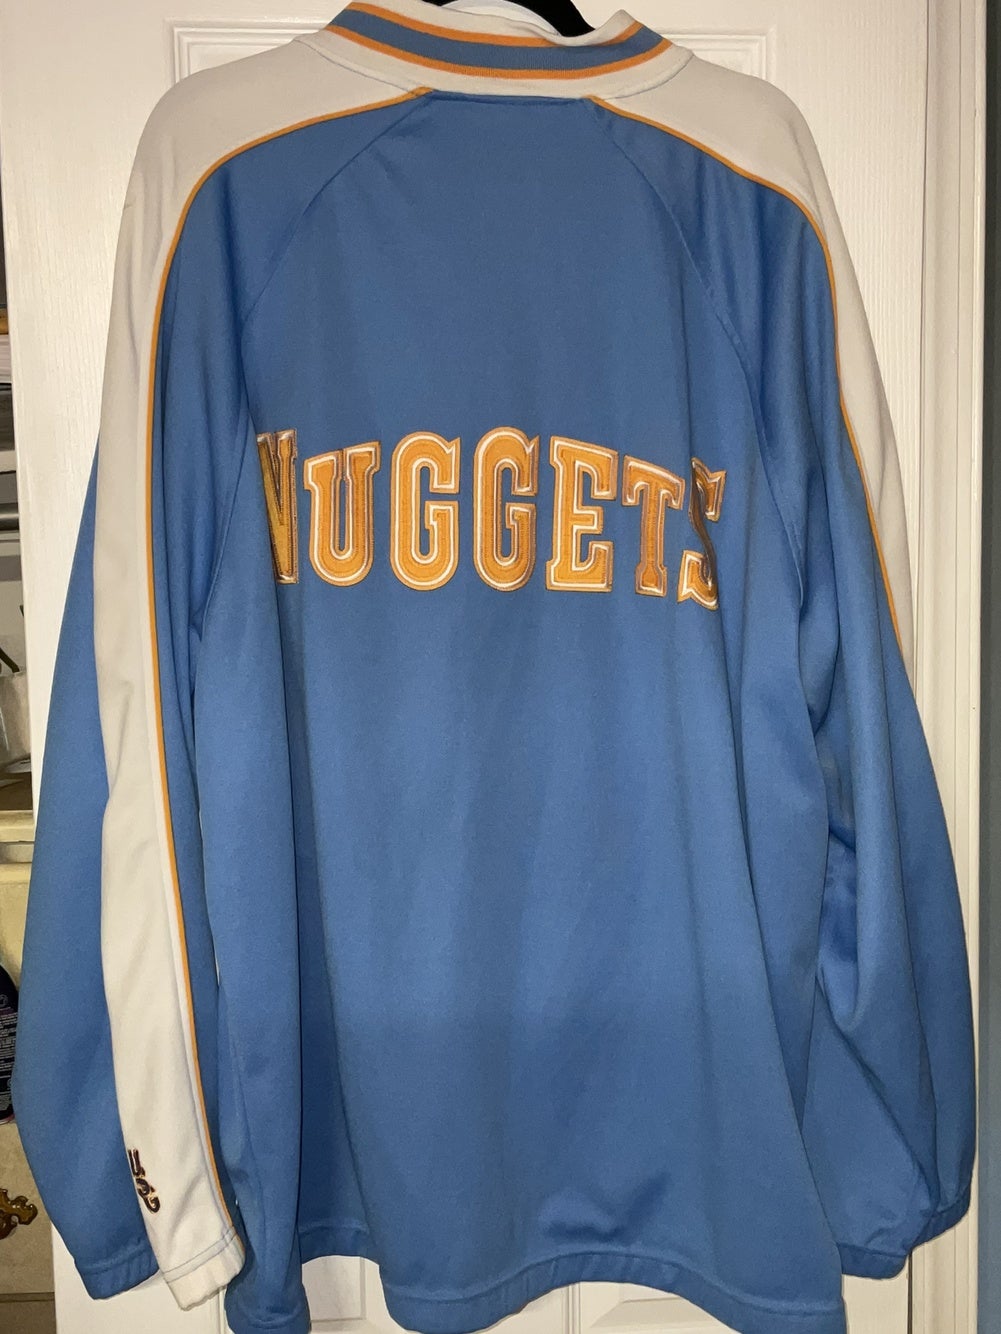 [USG] Vintage NBA Denver Nuggets Tracksuit RARE - Size 2x